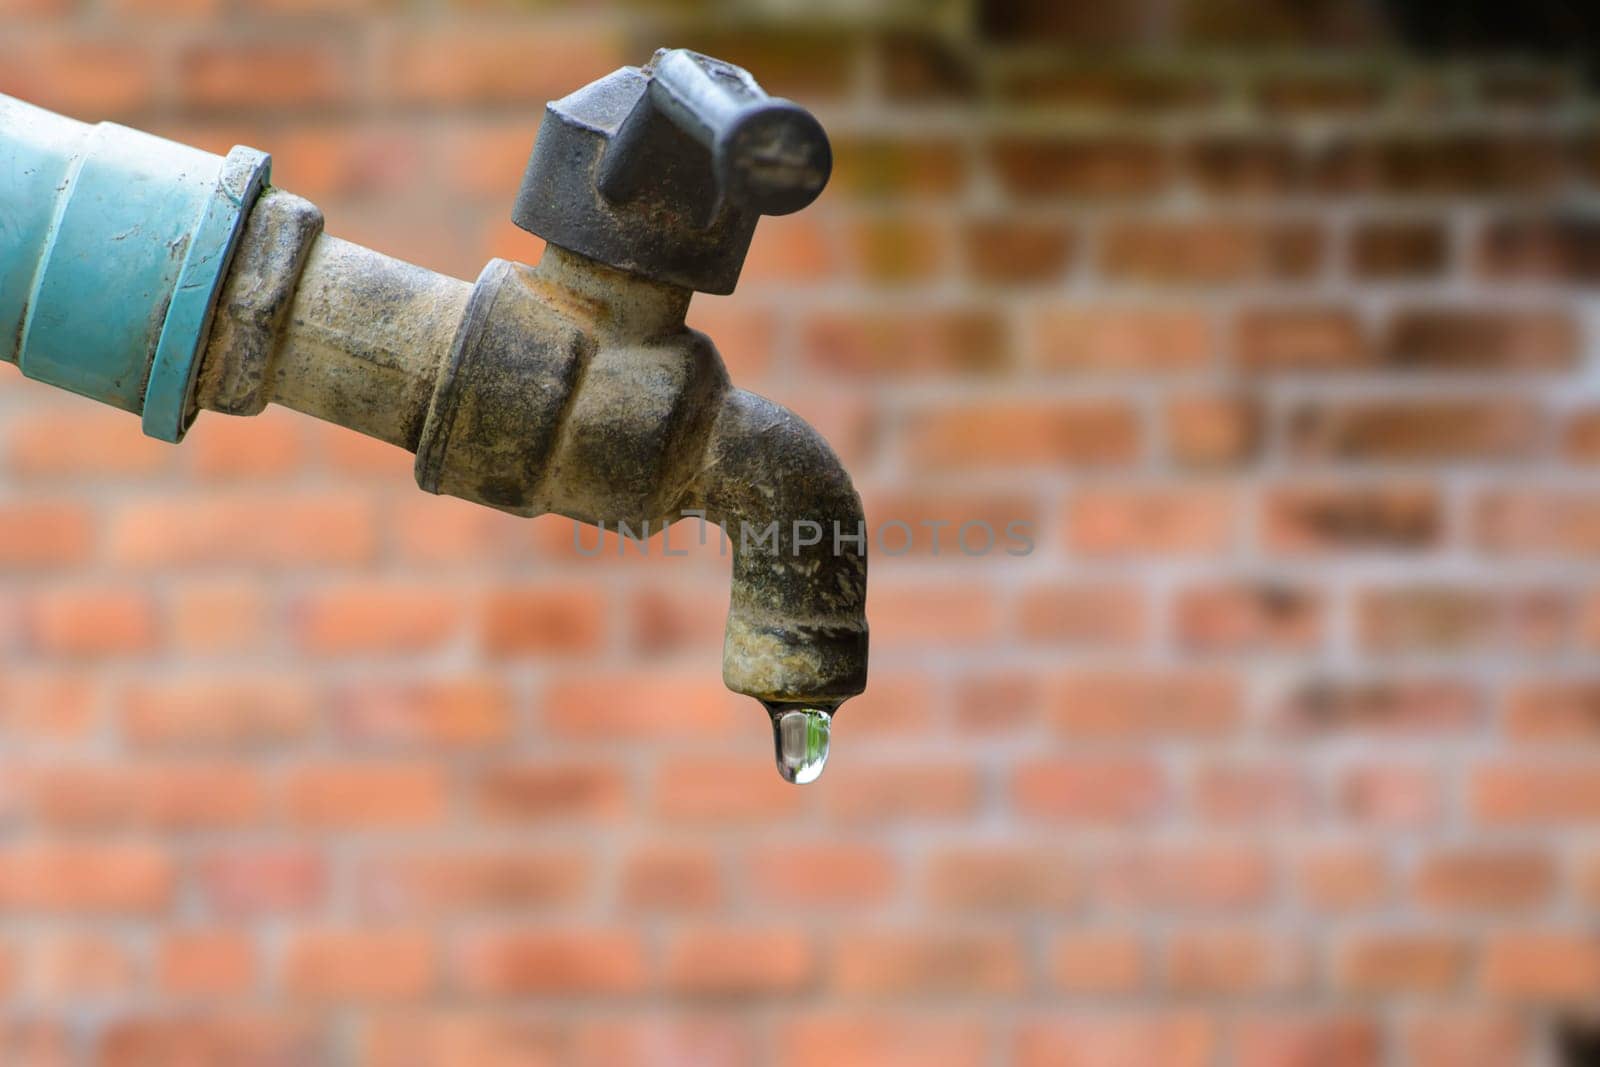 Water valve in the garden , water valve for industrial